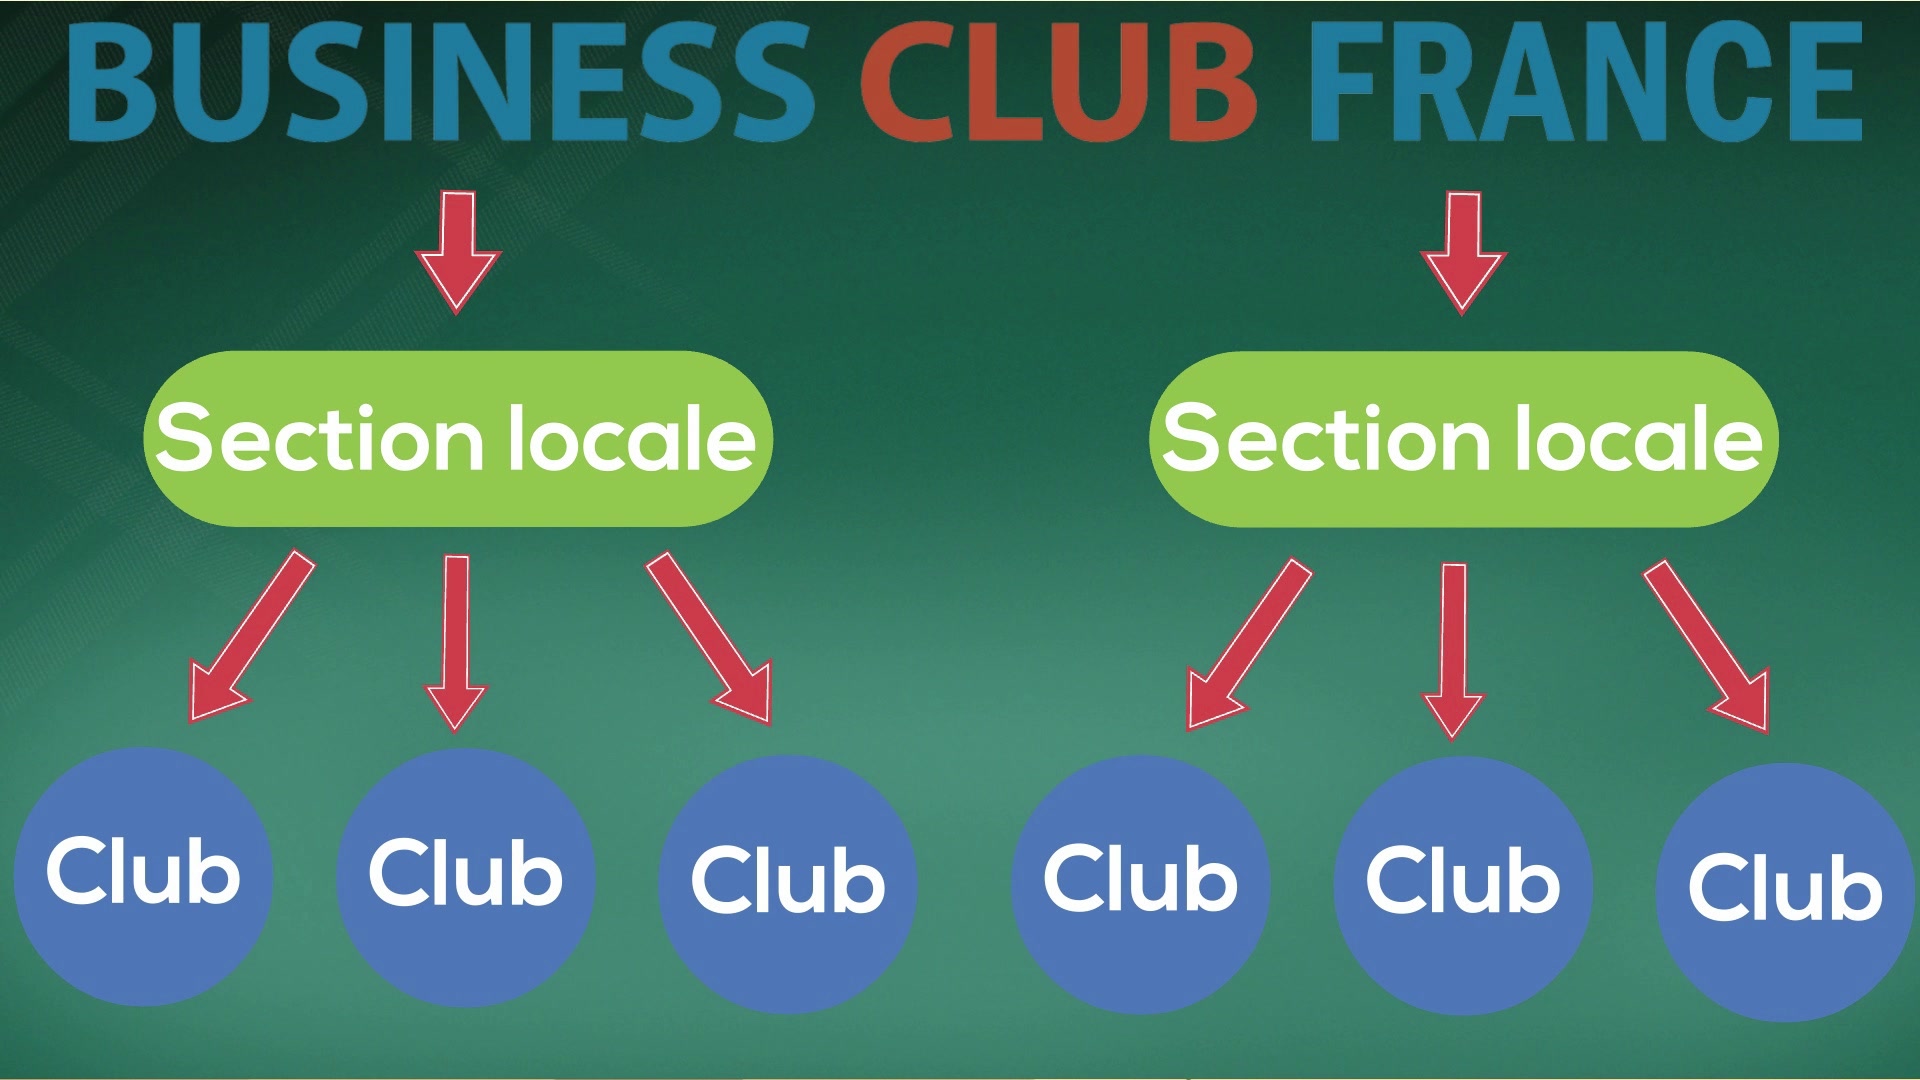 Chapitre 19 - Business Club